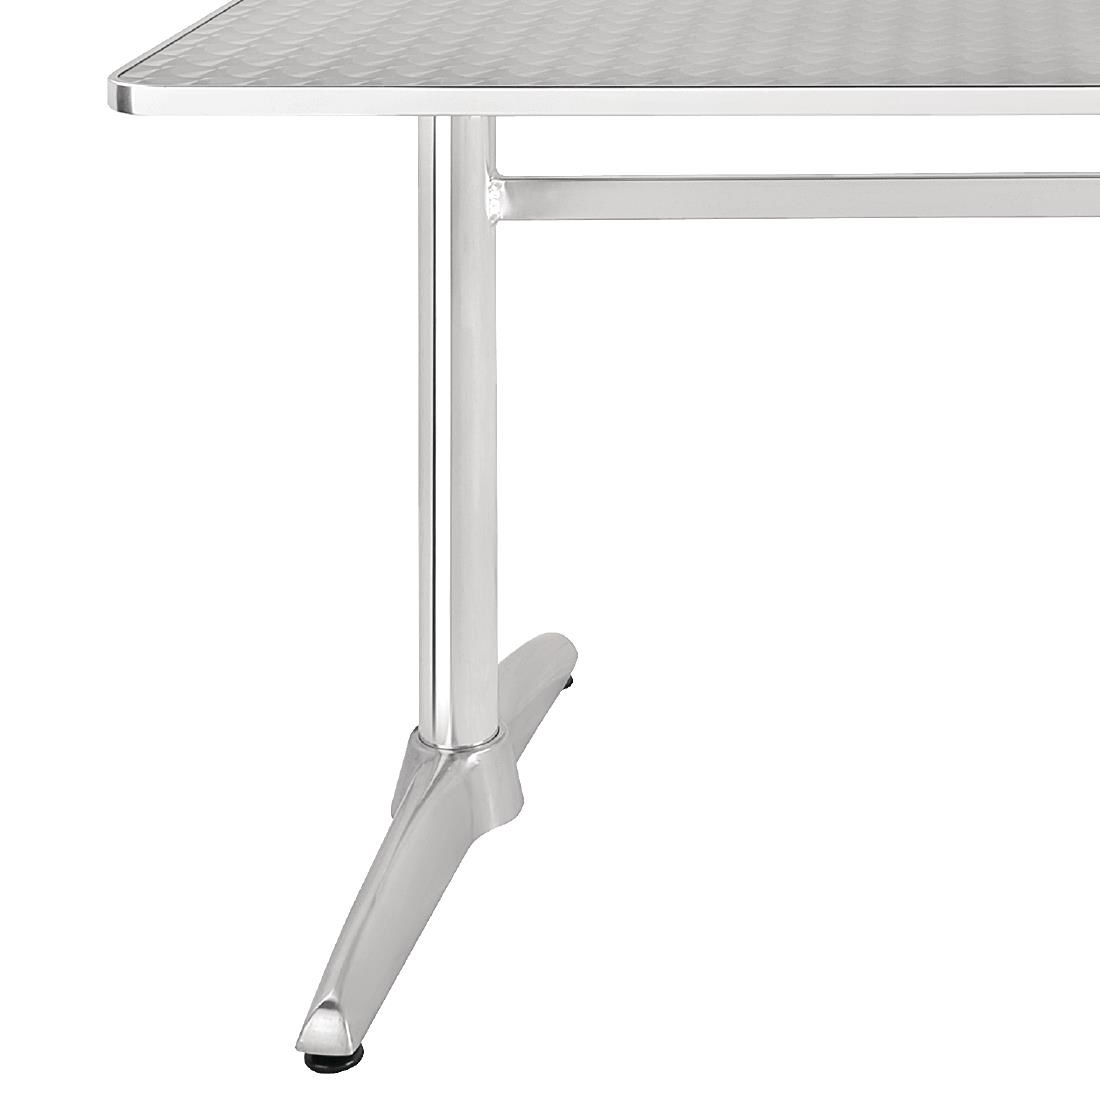 Rechteckiger Tisch | 72 x 120 x 60cm | Edelstahl/Aluminium 